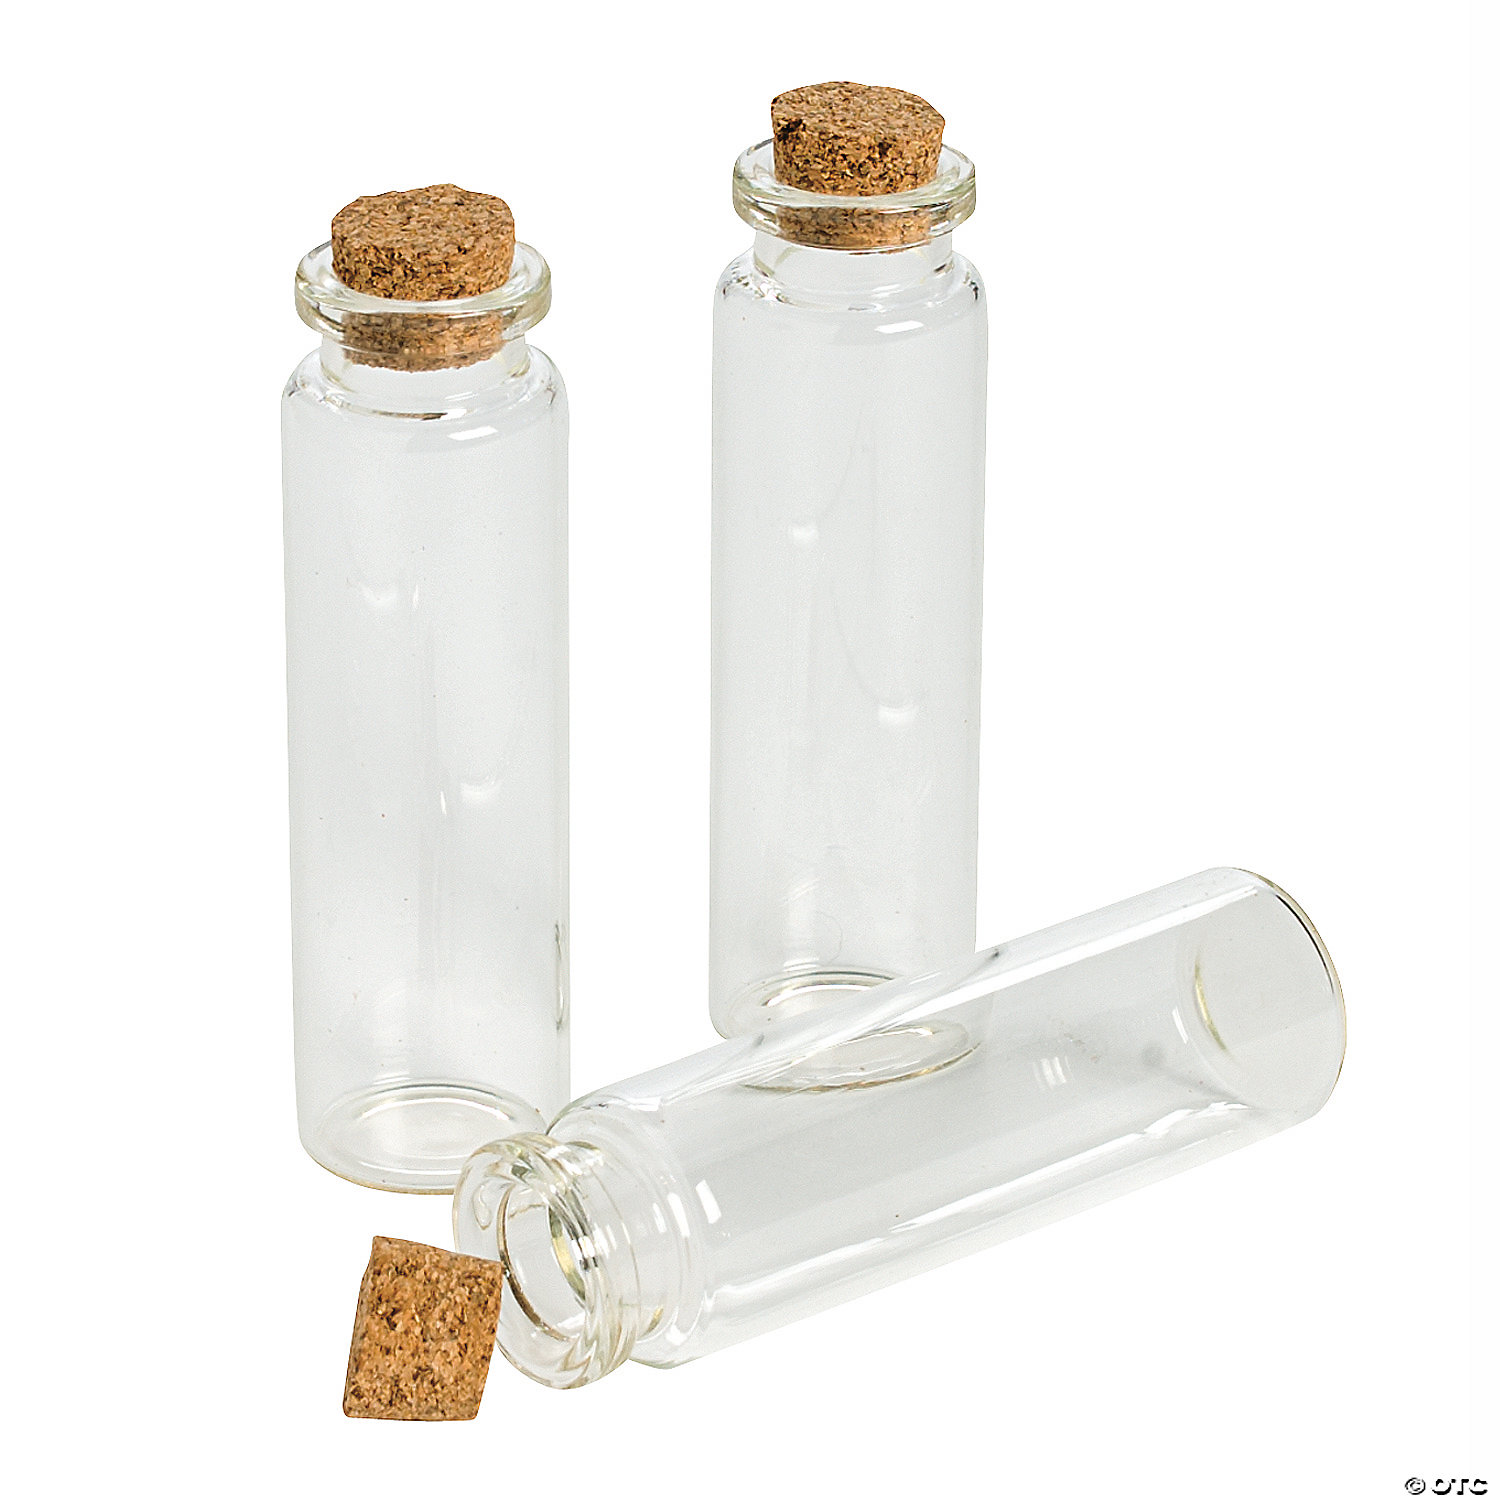 Grehom 100 ml Mini Oil Vinegar Bottle Set; 2 Recycled Glass Bottles with natural cork stopper